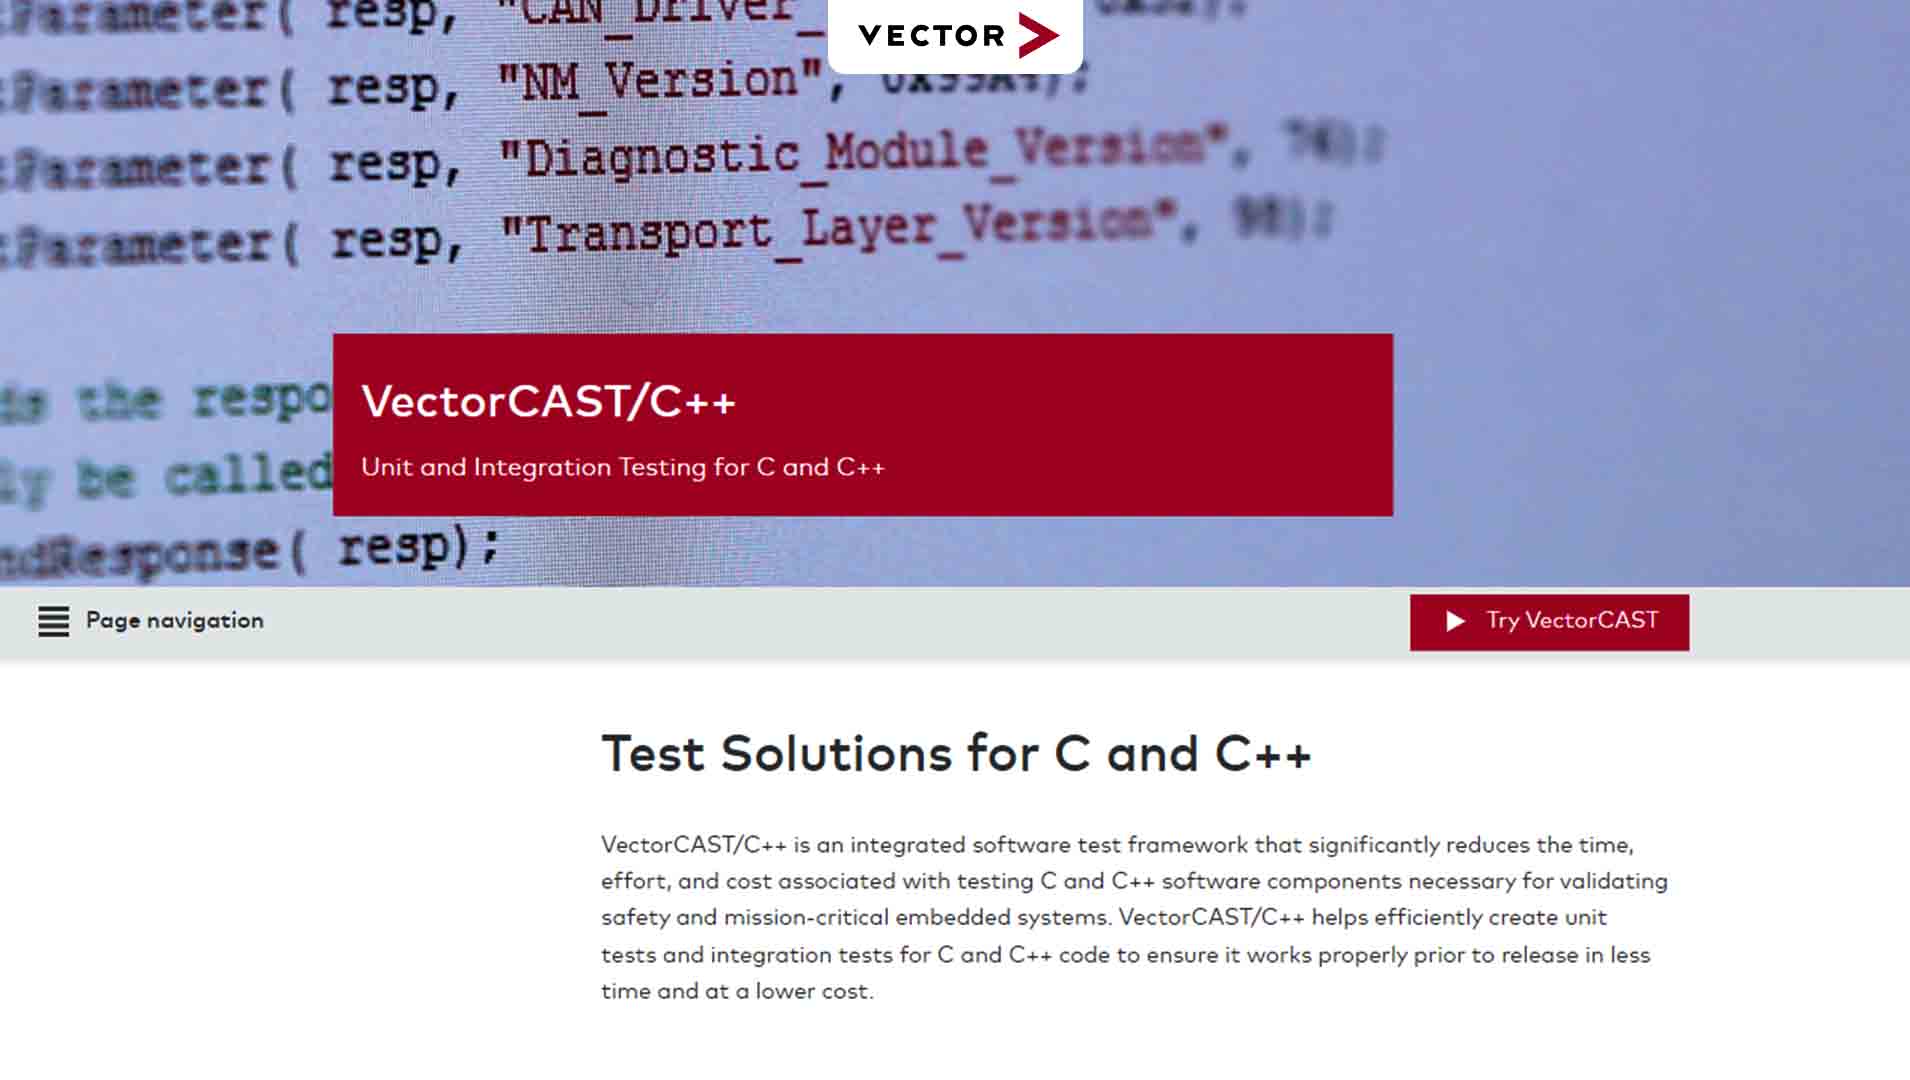 VectorCAST/C++